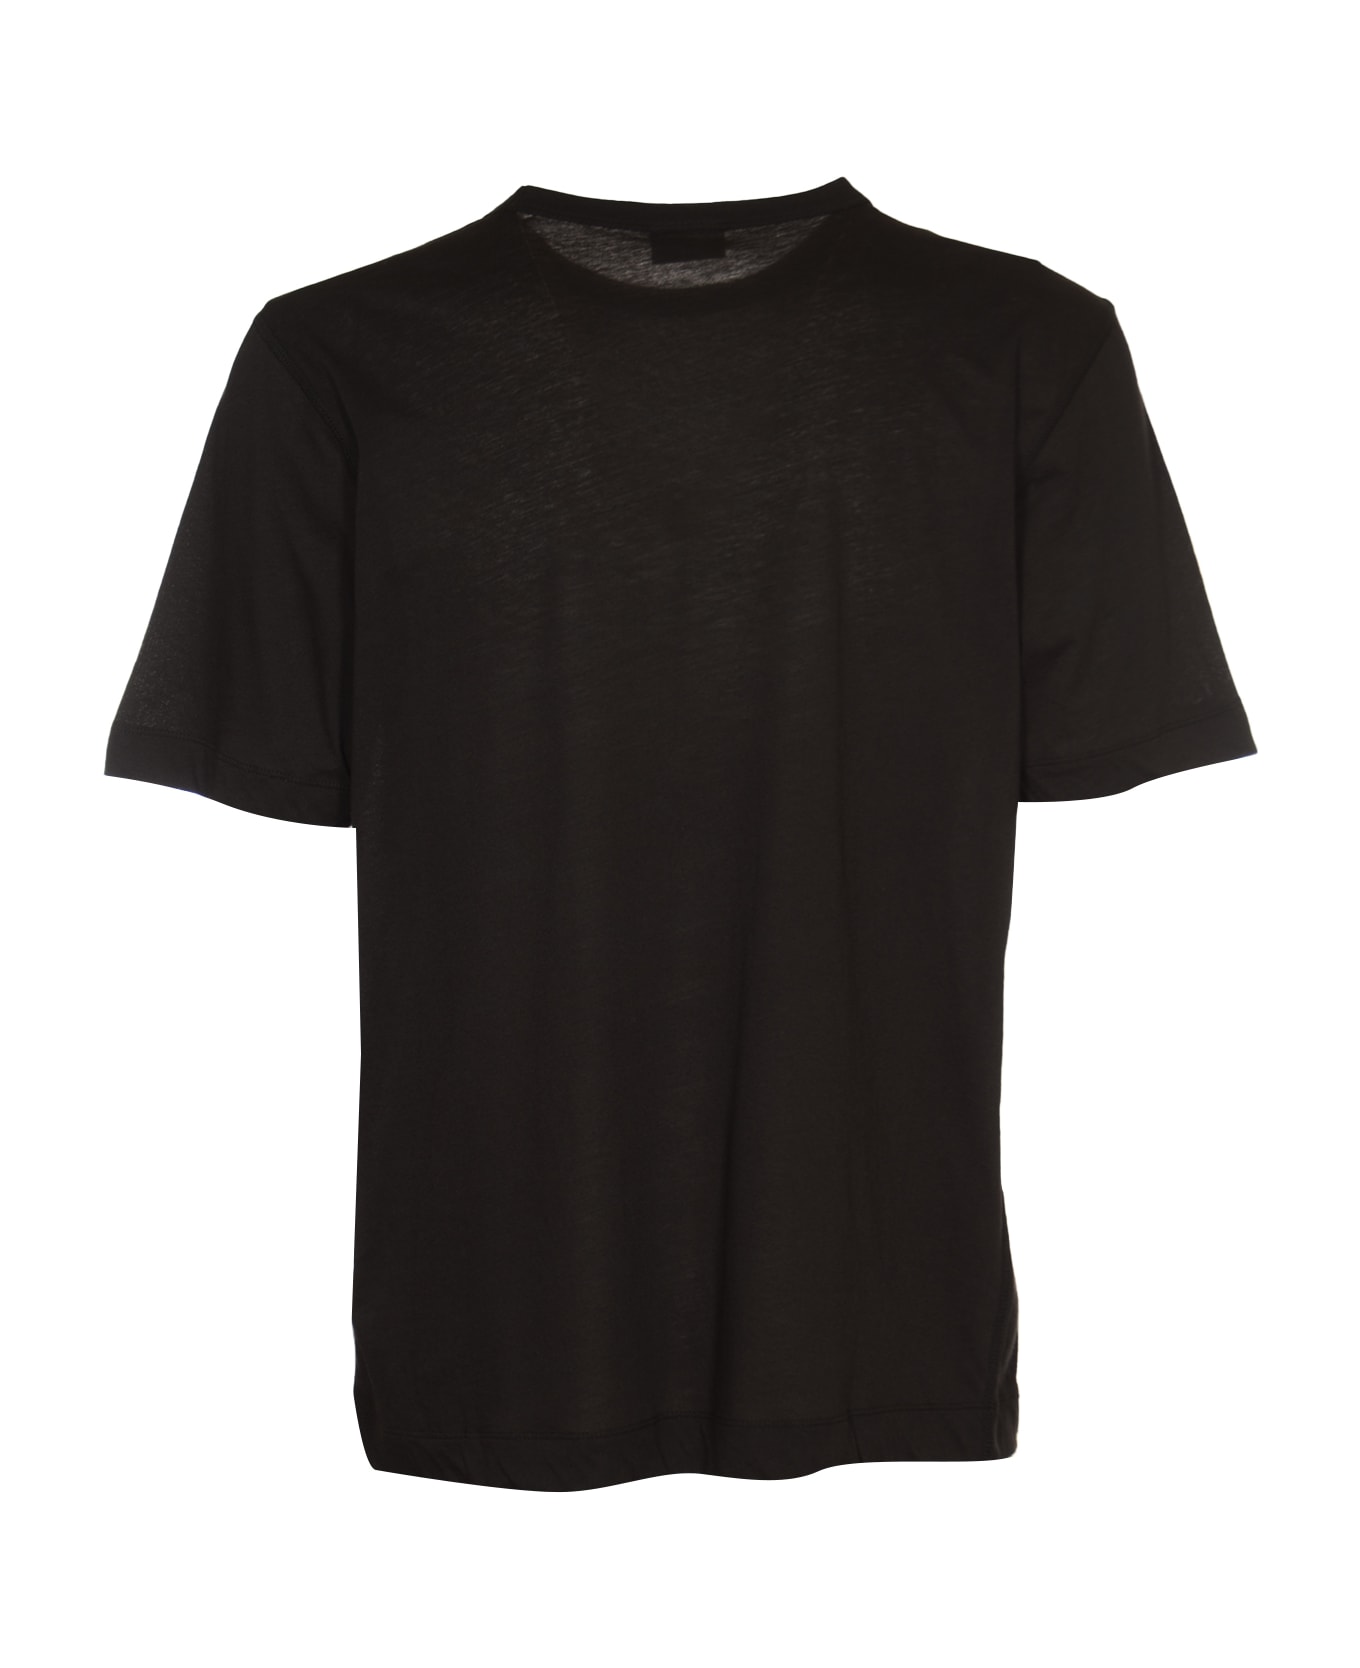 Dries Van Noten Habba T-shirt - Black